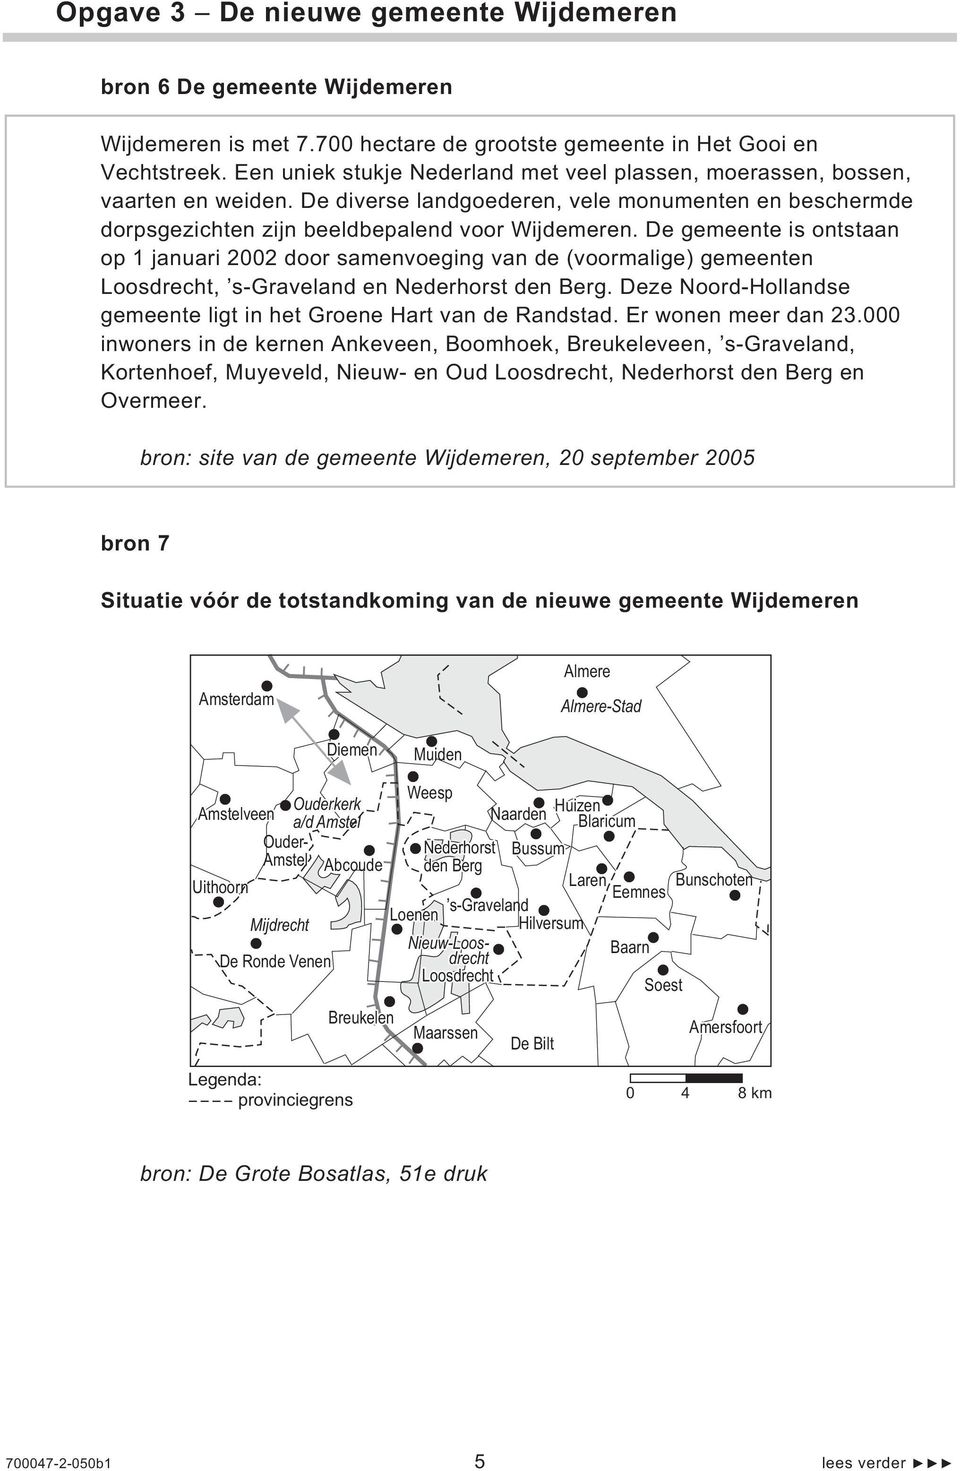 De gemeente is ontstaan op 1 januari 2002 door samenvoeging van de (voormalige) gemeenten Loosdrecht, s-graveland en Nederhorst den Berg.